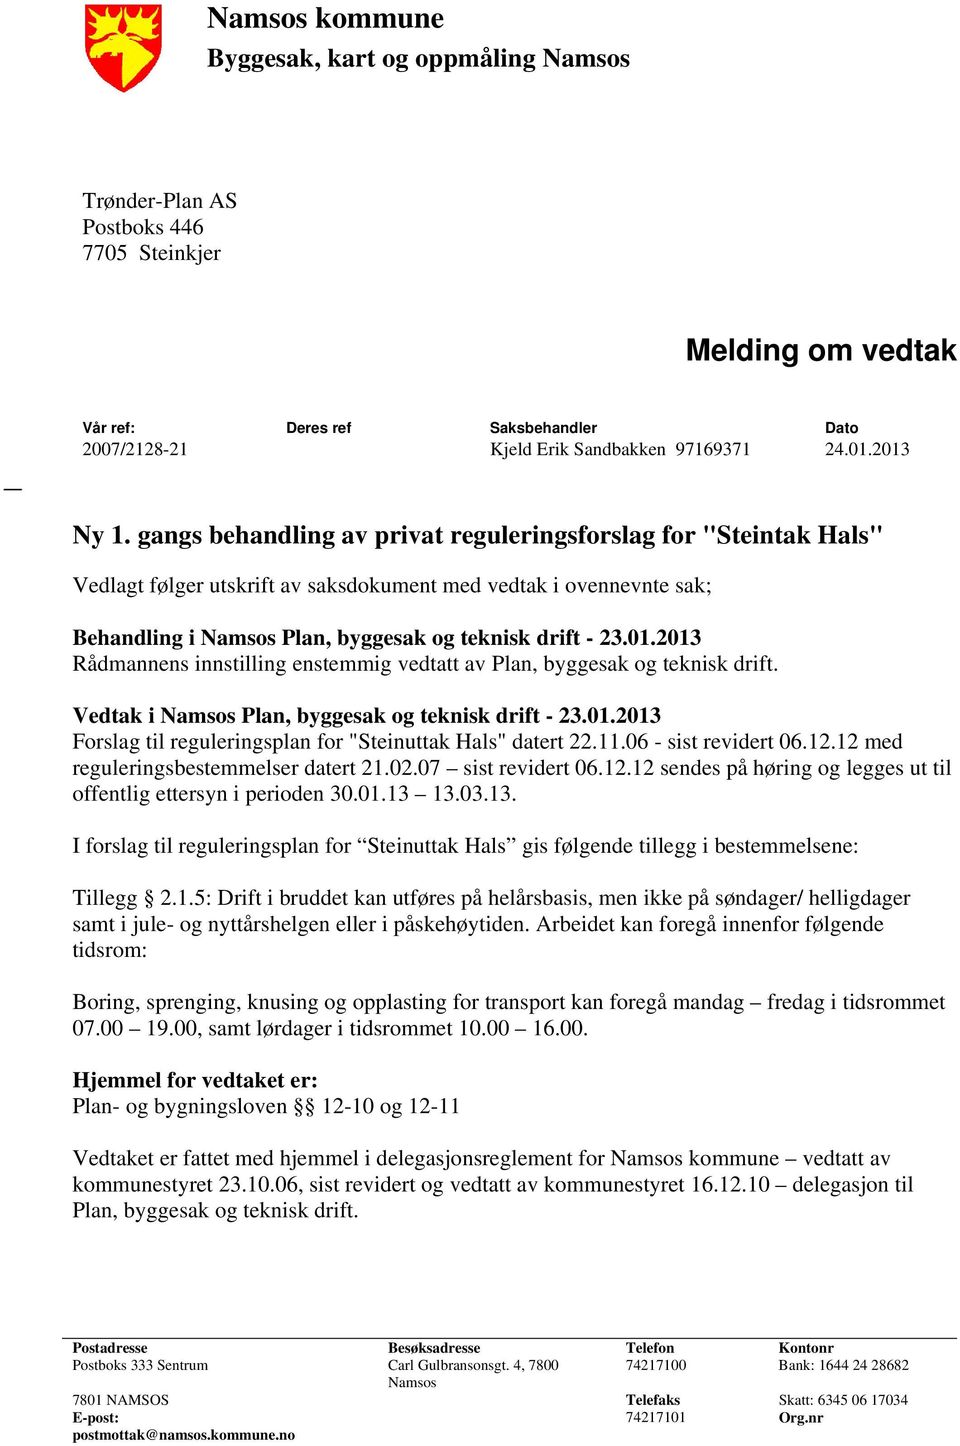 gangs behandling av privat reguleringsforslag for "Steintak Hals" Vedlagt følger utskrift av saksdokument med vedtak i ovennevnte sak; Behandling i Namsos Plan, byggesak og teknisk drift - 23.01.